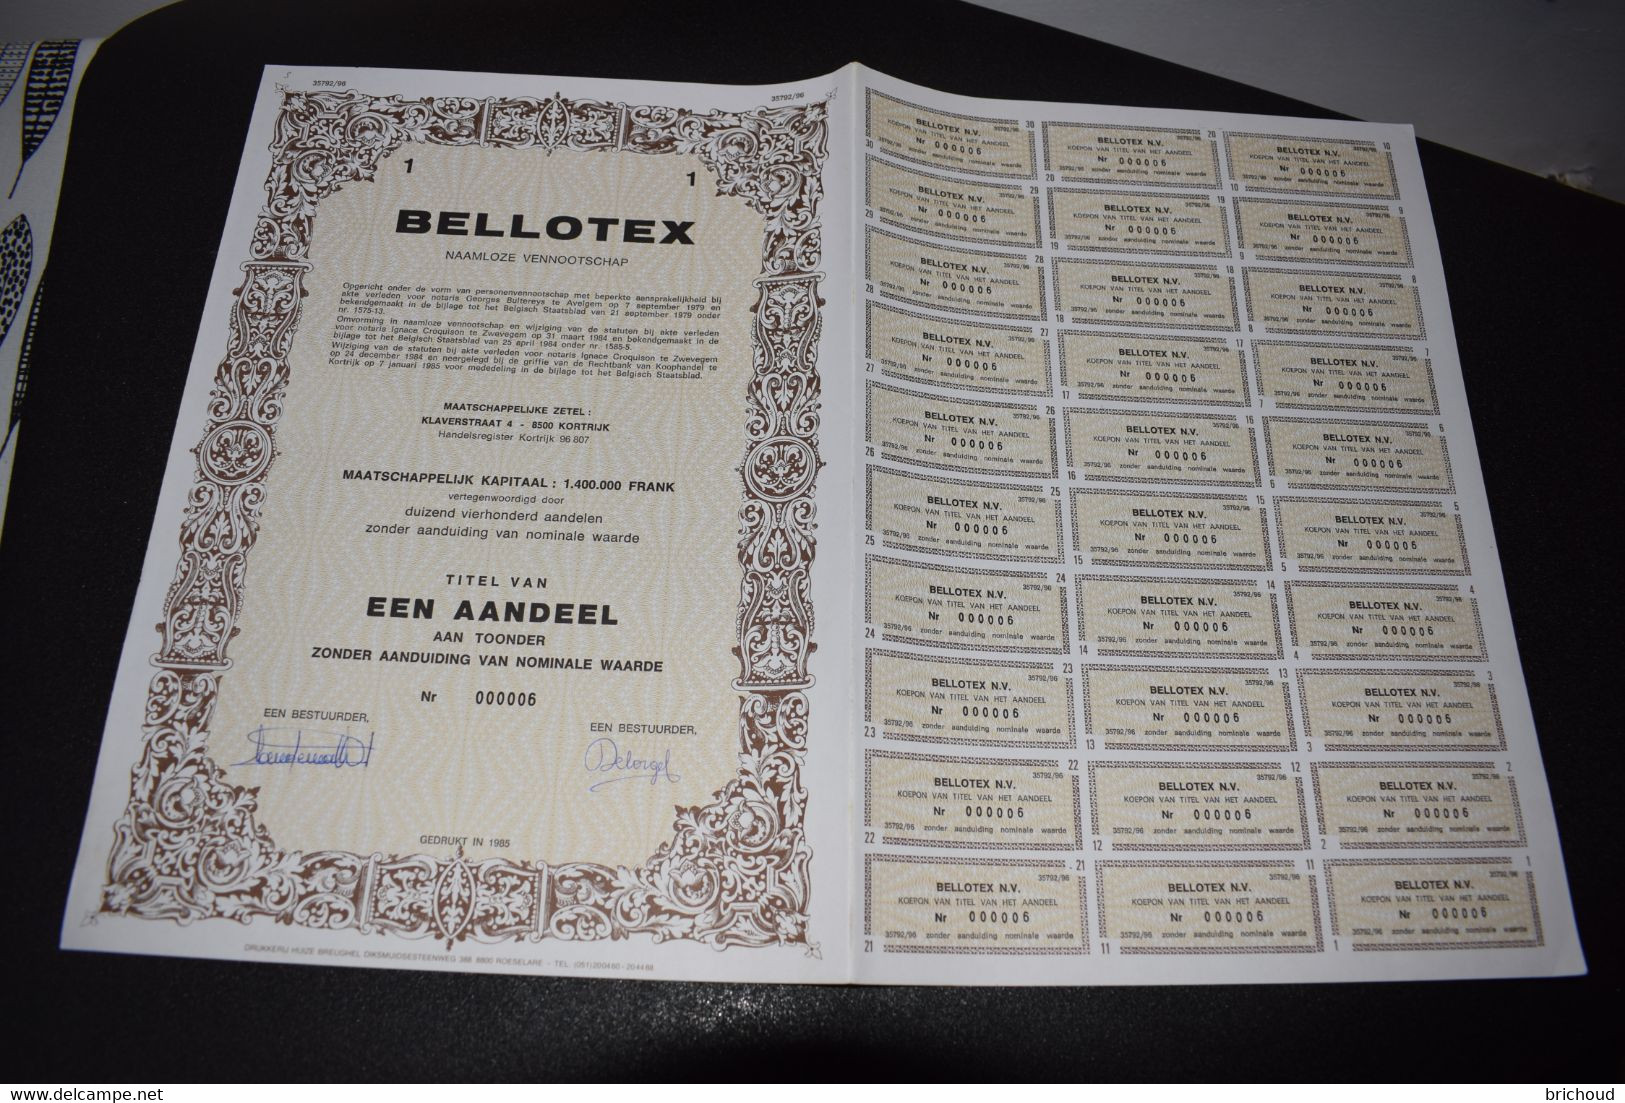 Bellotex Naamloze Vennootschap Textile 1 Aandeel 1985 Kortrijk Courtrai - Textiel